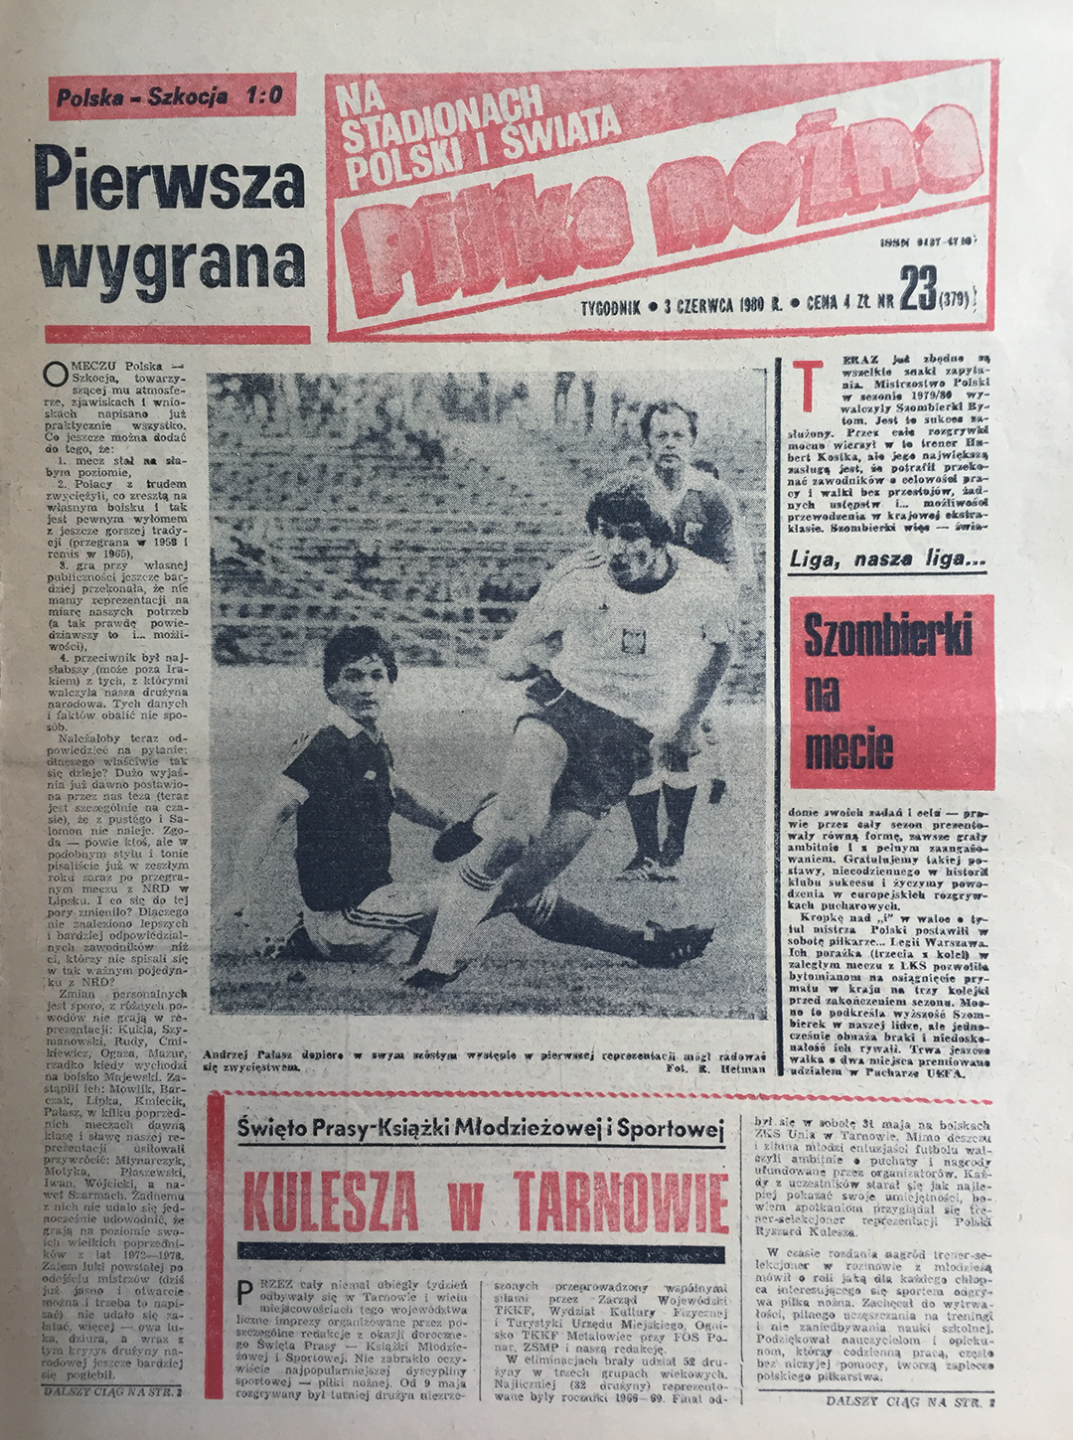 Okładka piłki nożnej po meczu Polska - Szkocja (28.05.1980)